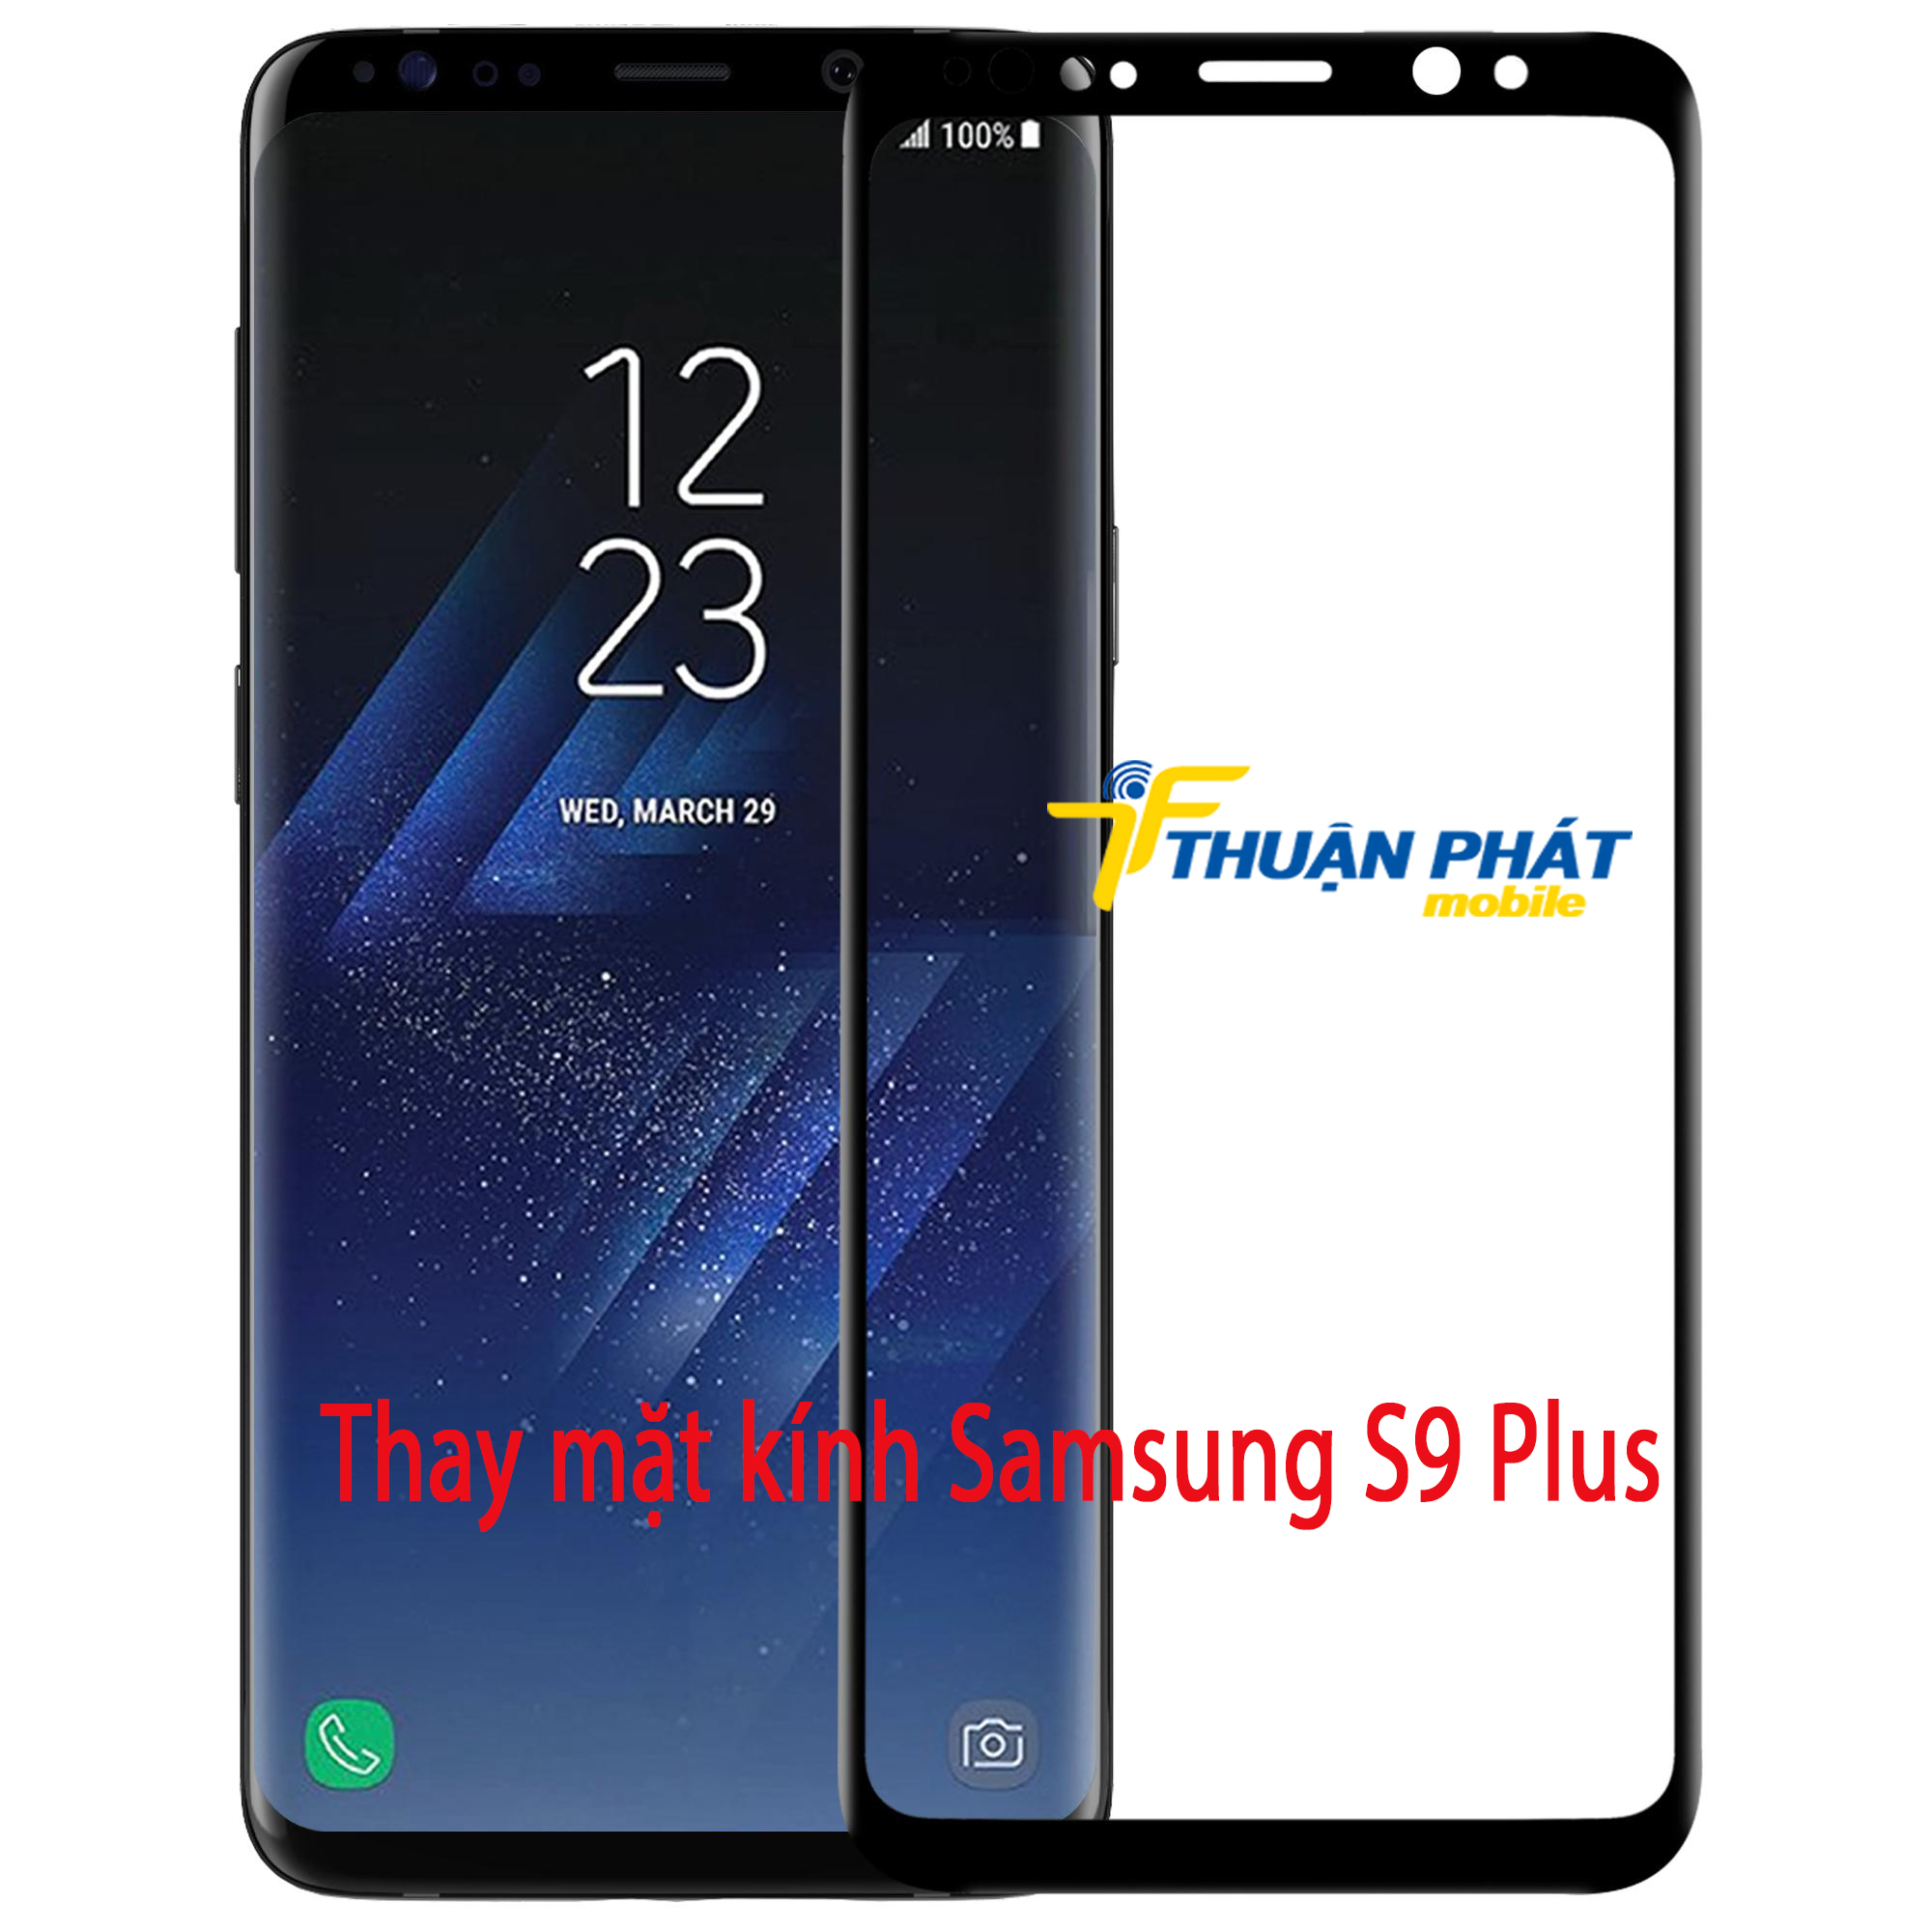 Thay mặt kính Samsung S9 Plus tại Thuận Phát Mobile